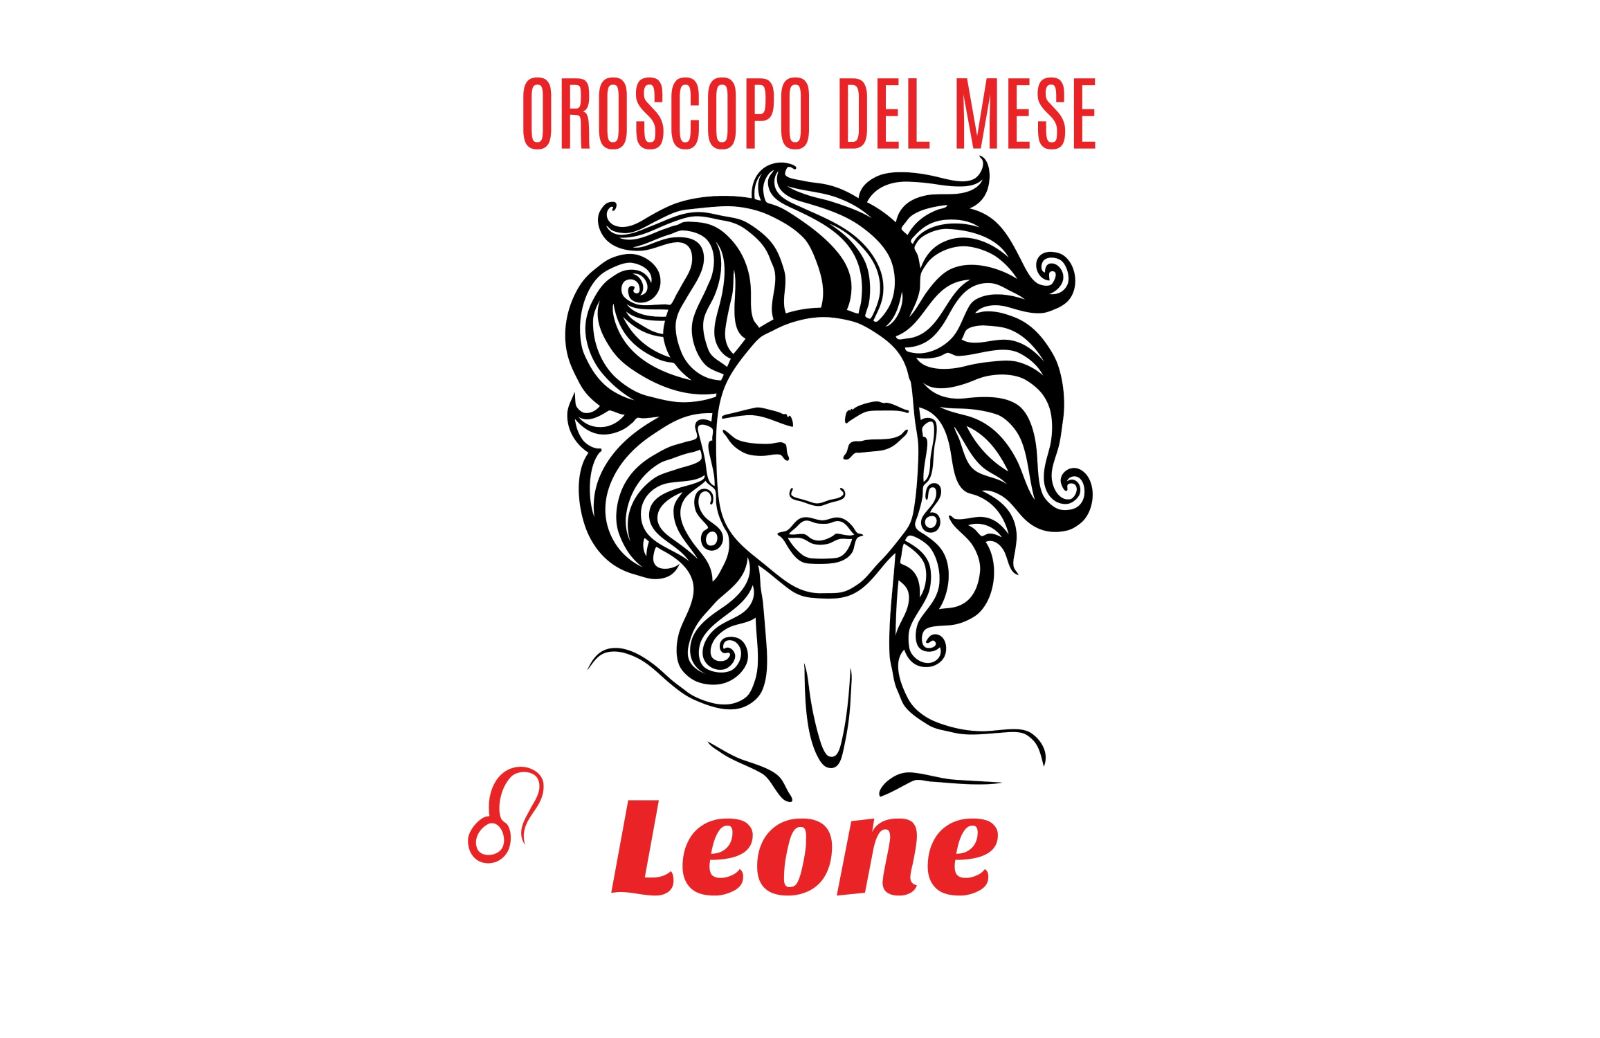 Oroscopo del mese - Leone: luglio 2019